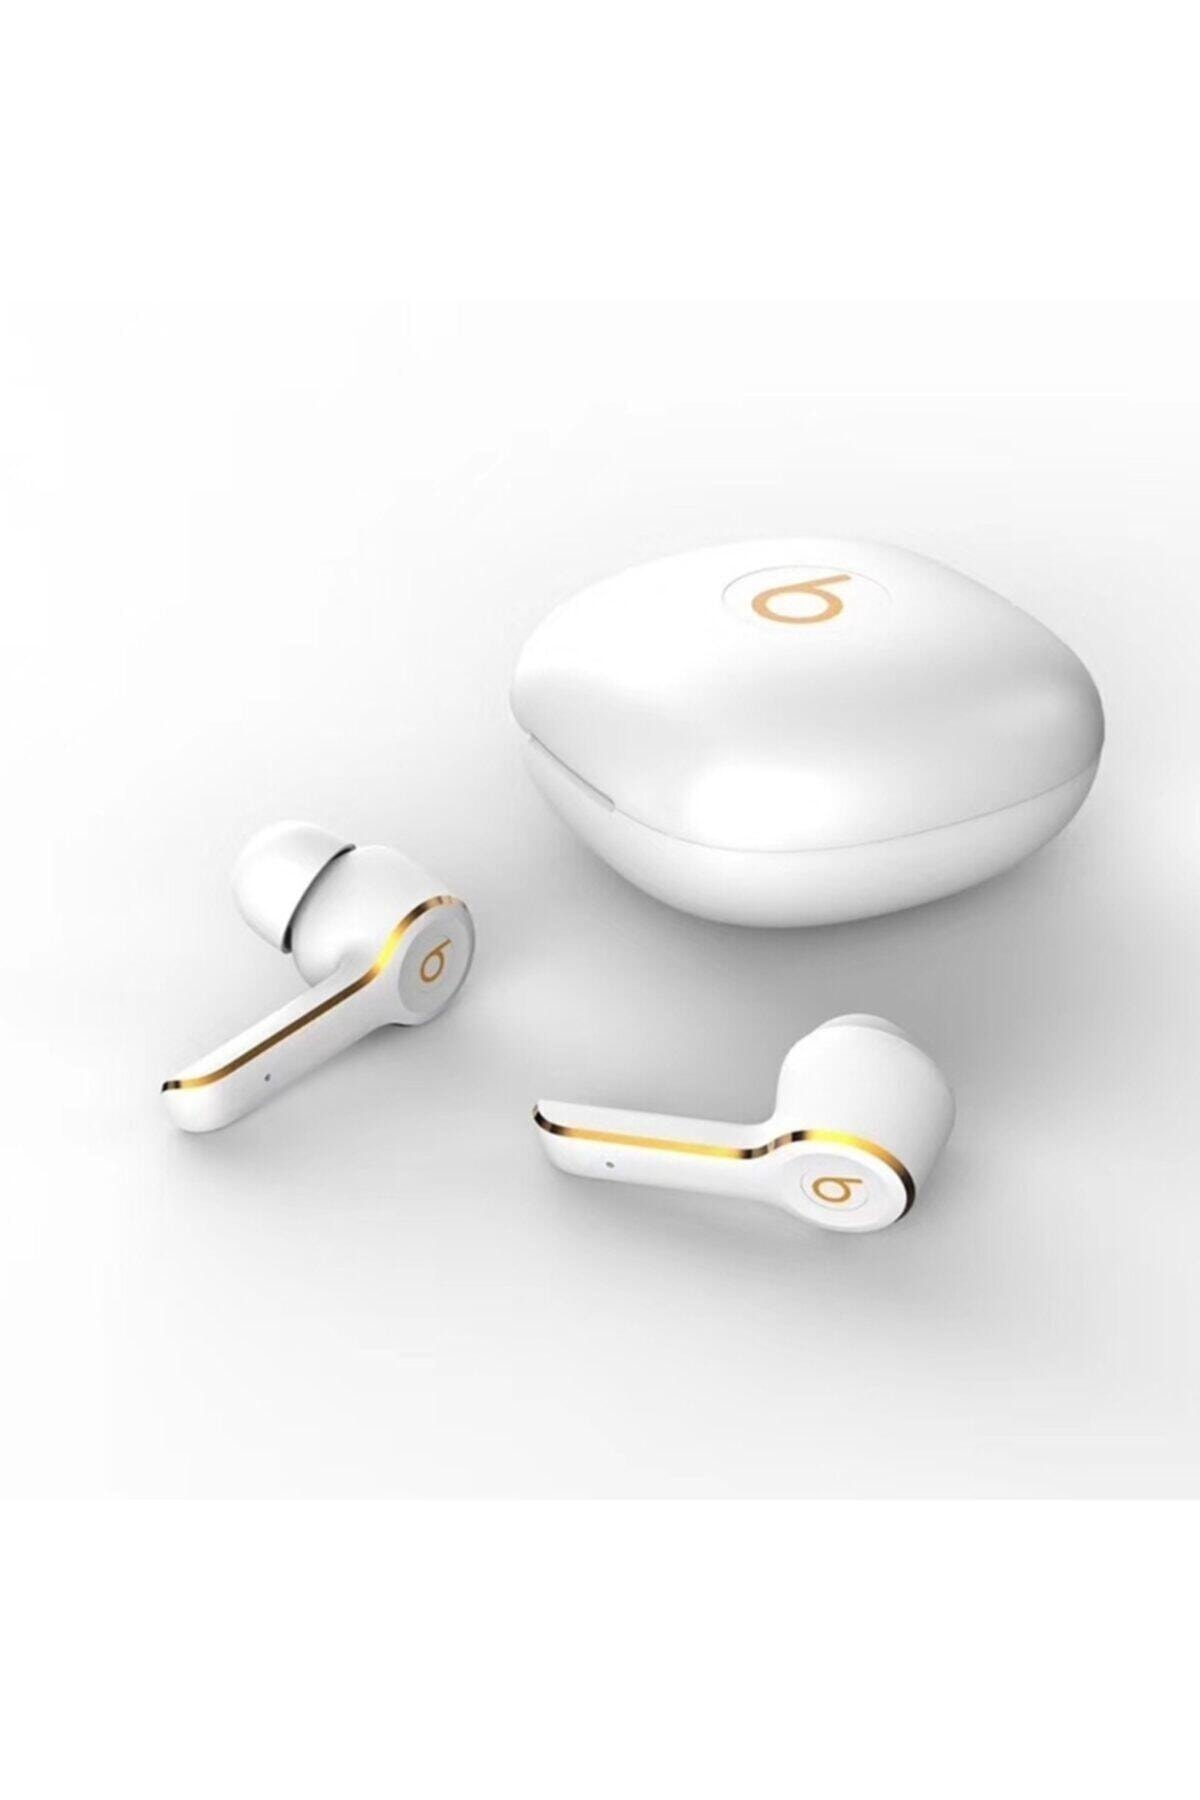 J144 Studio Pro Kablosuz Bluetooth Kulaklık Beyaz